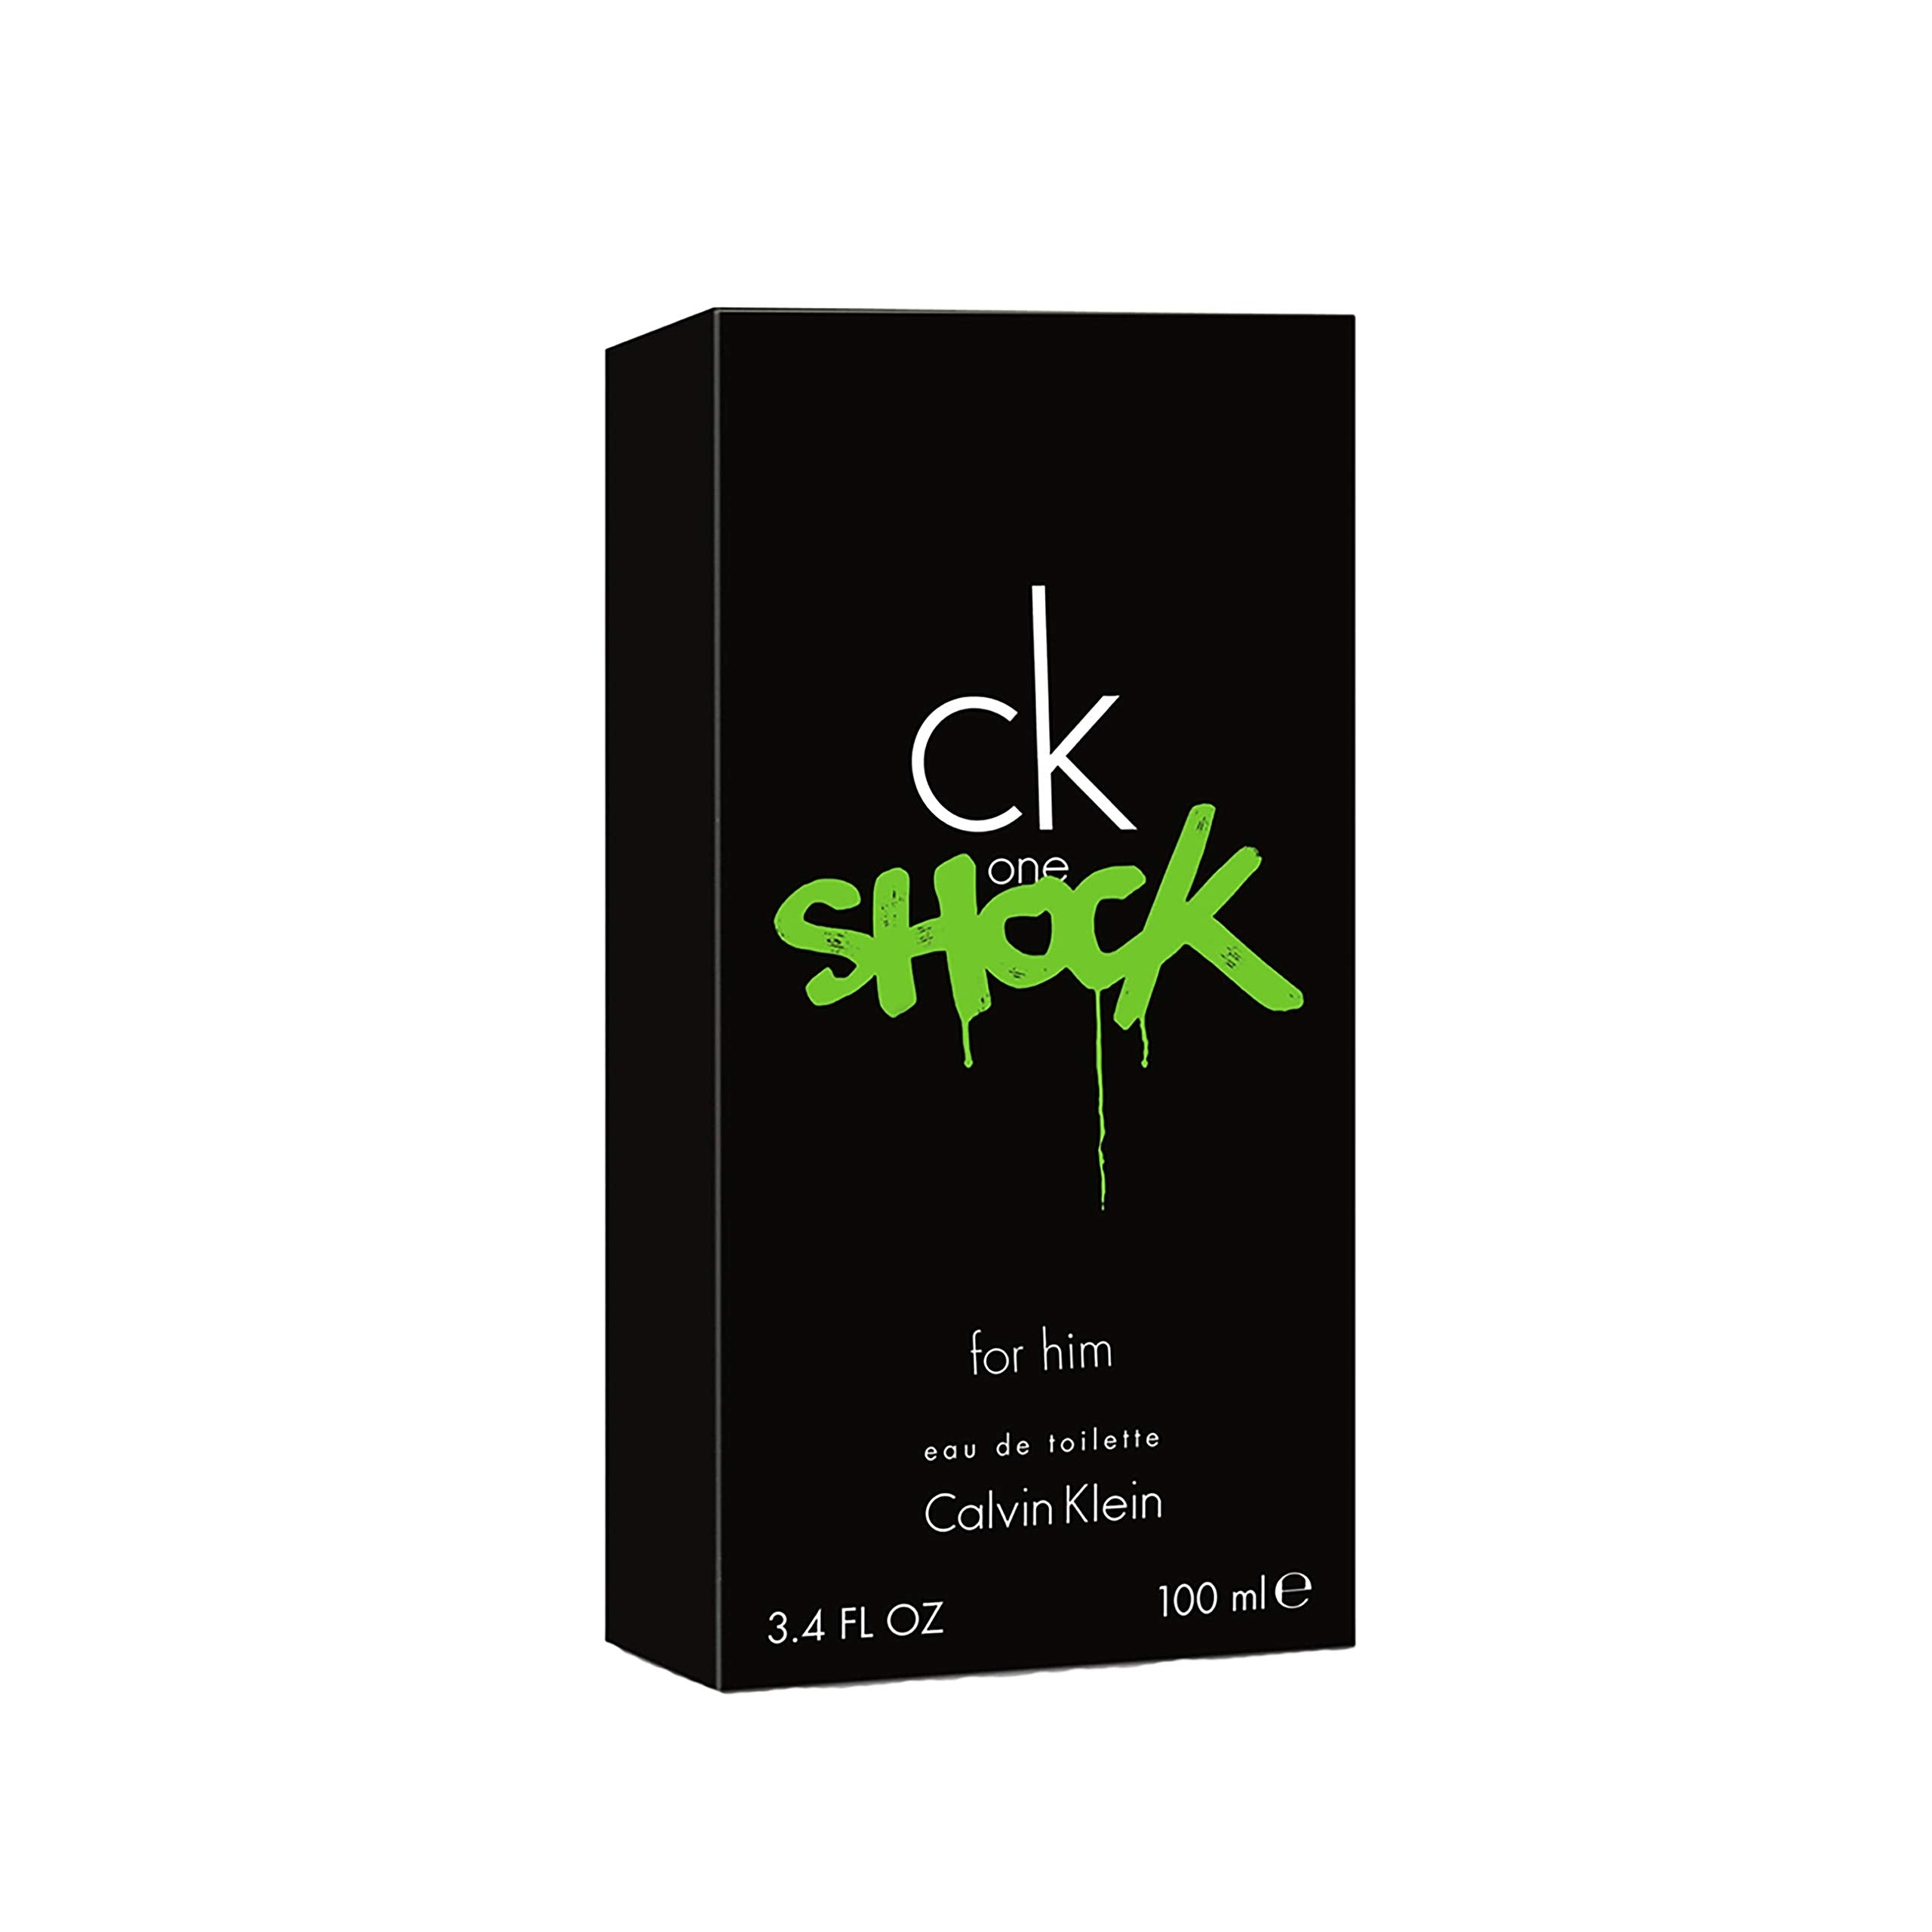 Shop Calvin Klein Ck One Shock EDT For Men in Australia